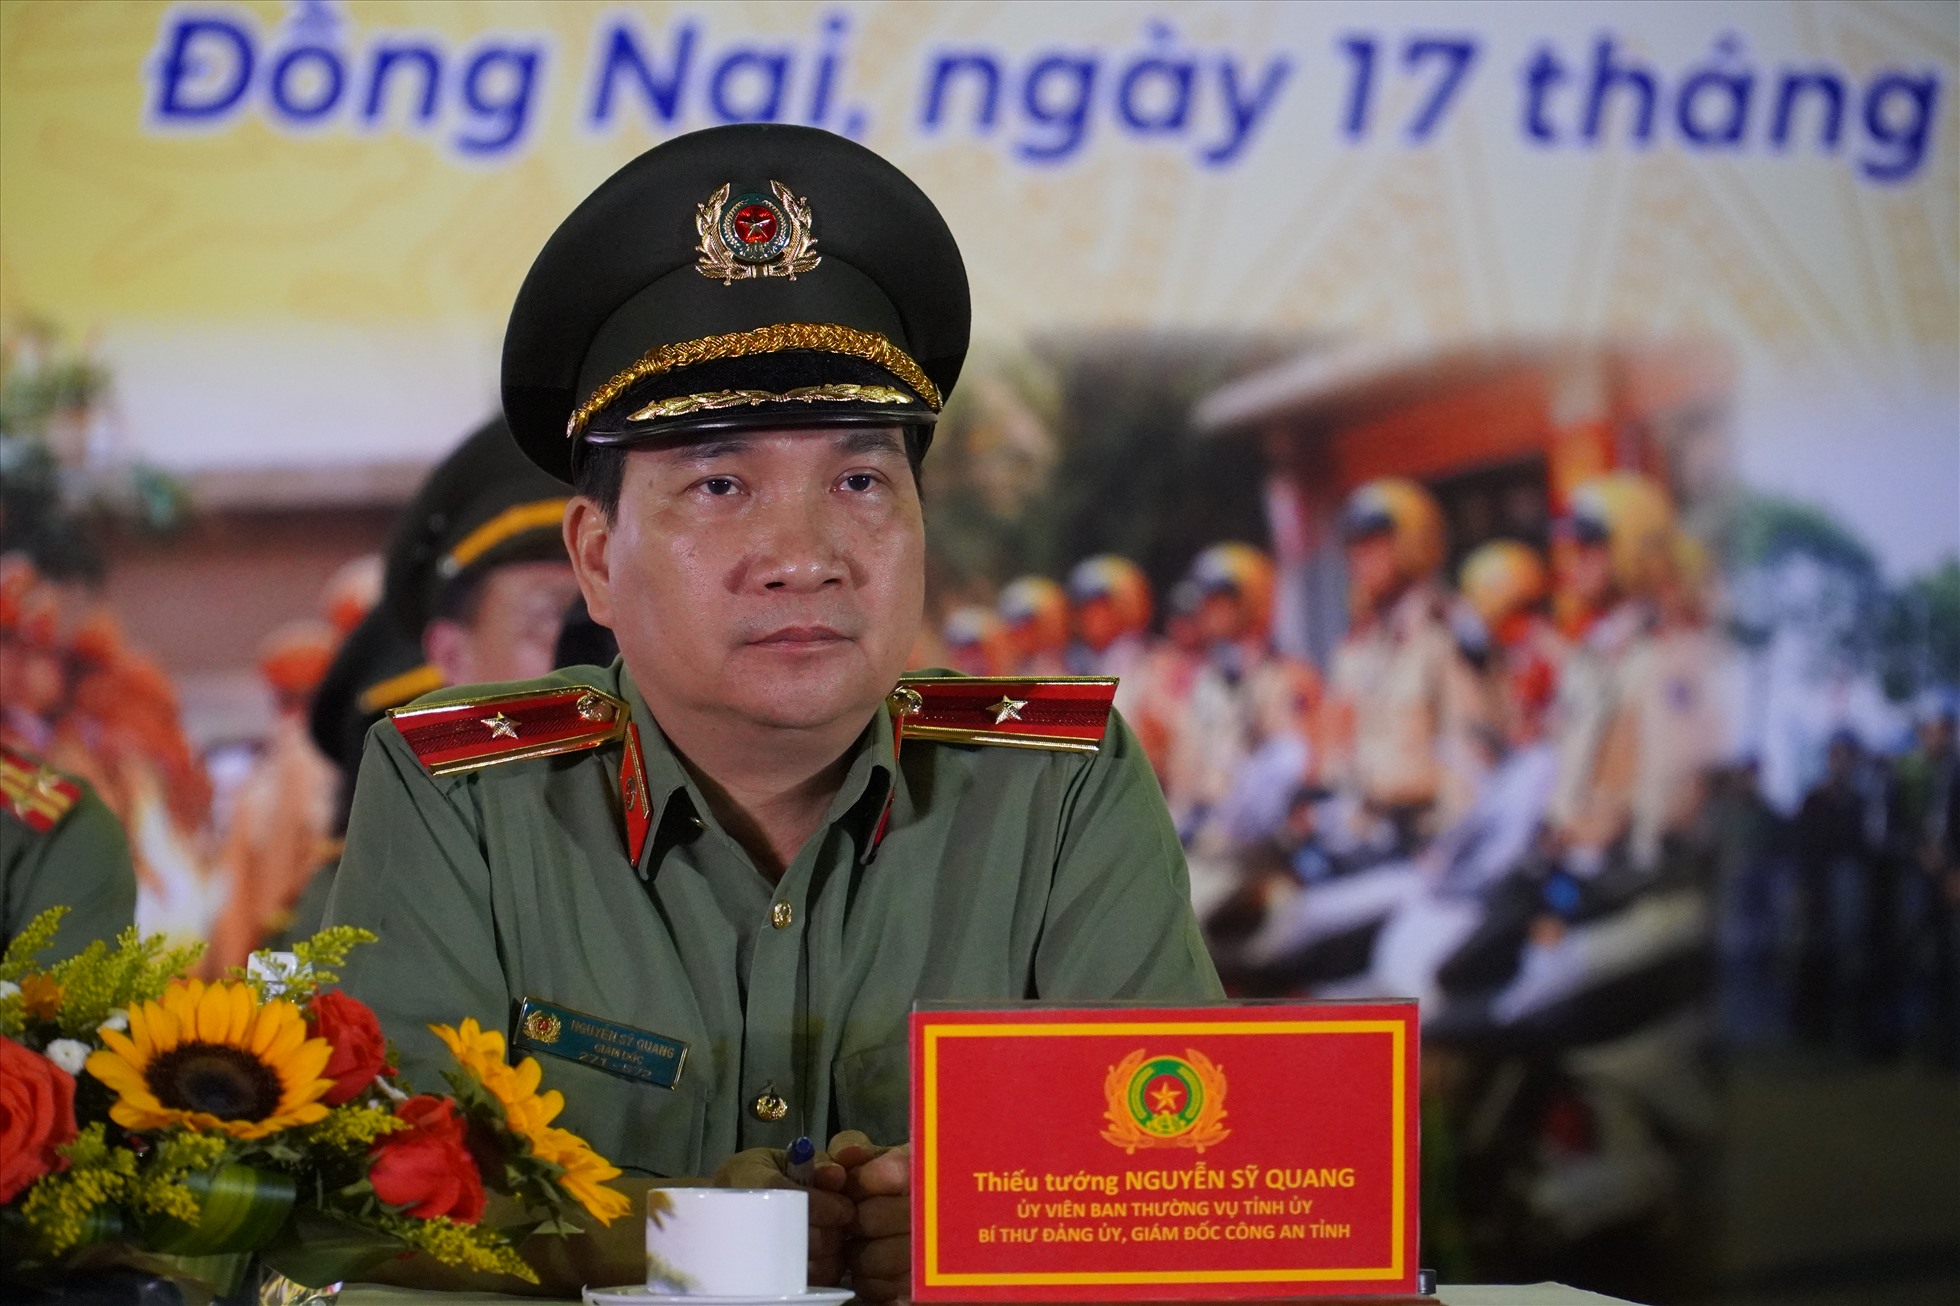 Thiếu tướng Nguyễn Sỹ Quang - Giám đốc Công an tỉnh Đồng Nai. Ảnh: Hà Anh Chiến